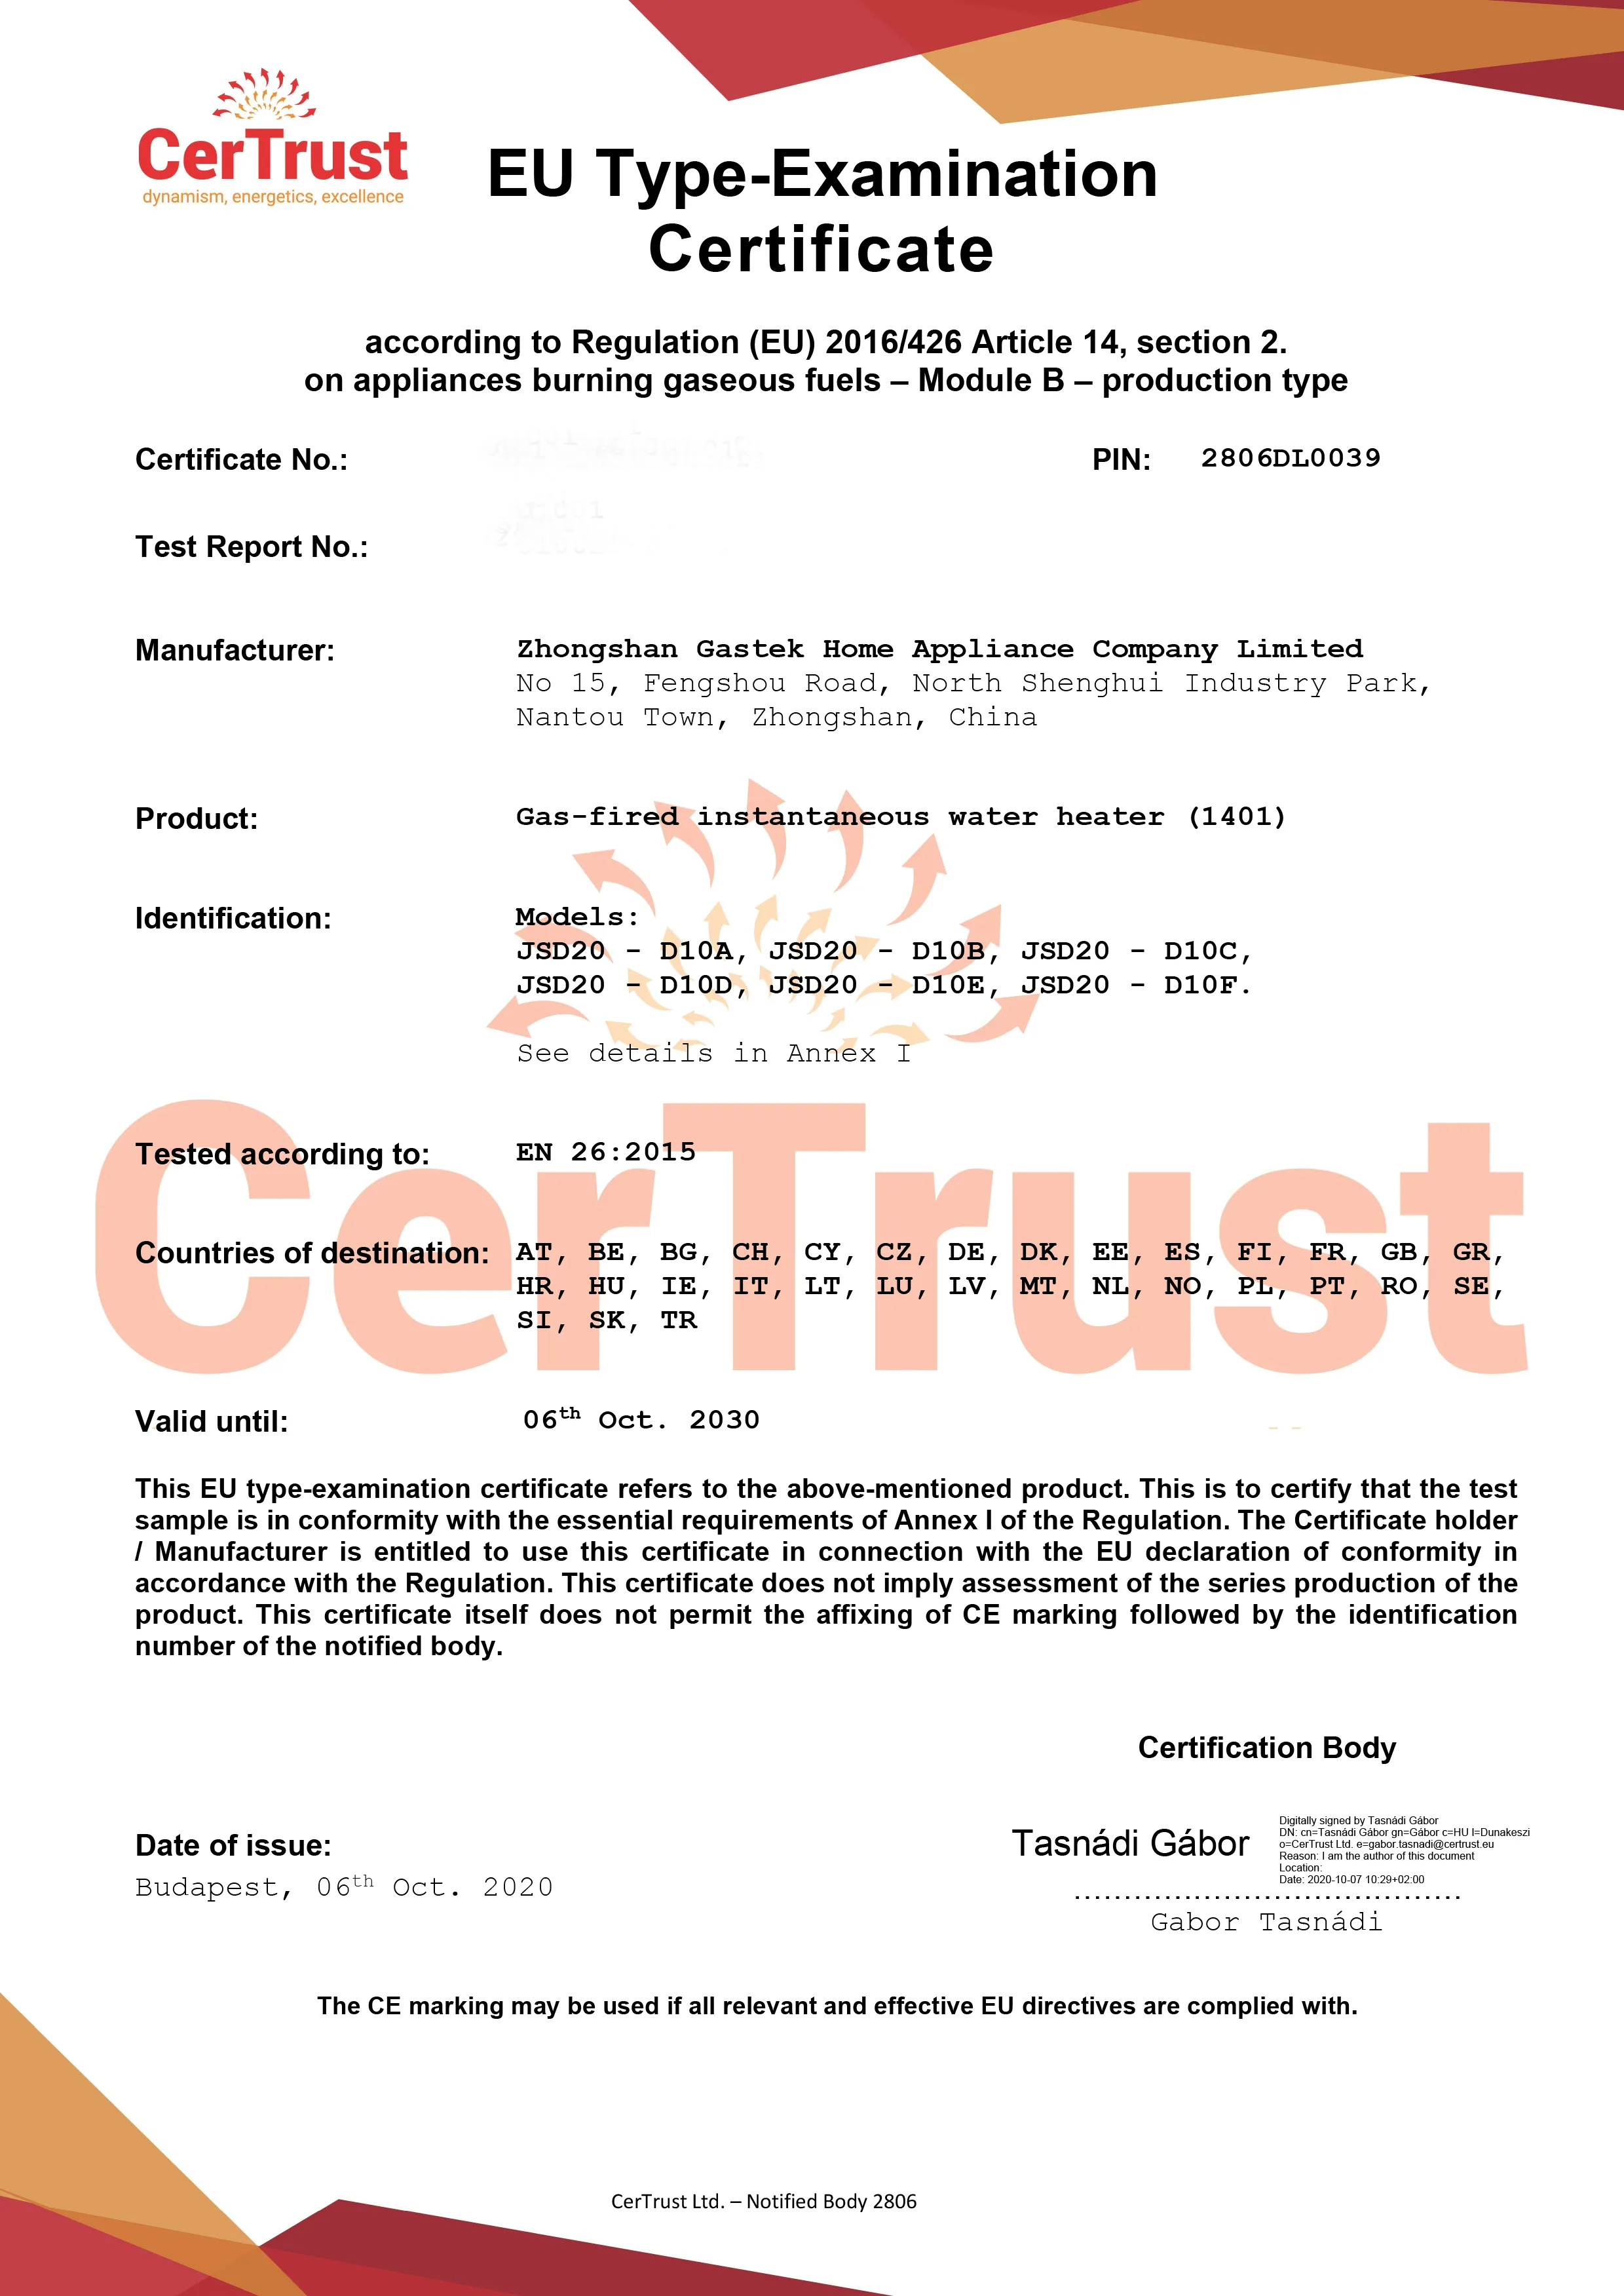 Gastek đã nhận được chứng chỉ CE cho máy nước nóng khí vào tháng 10 này